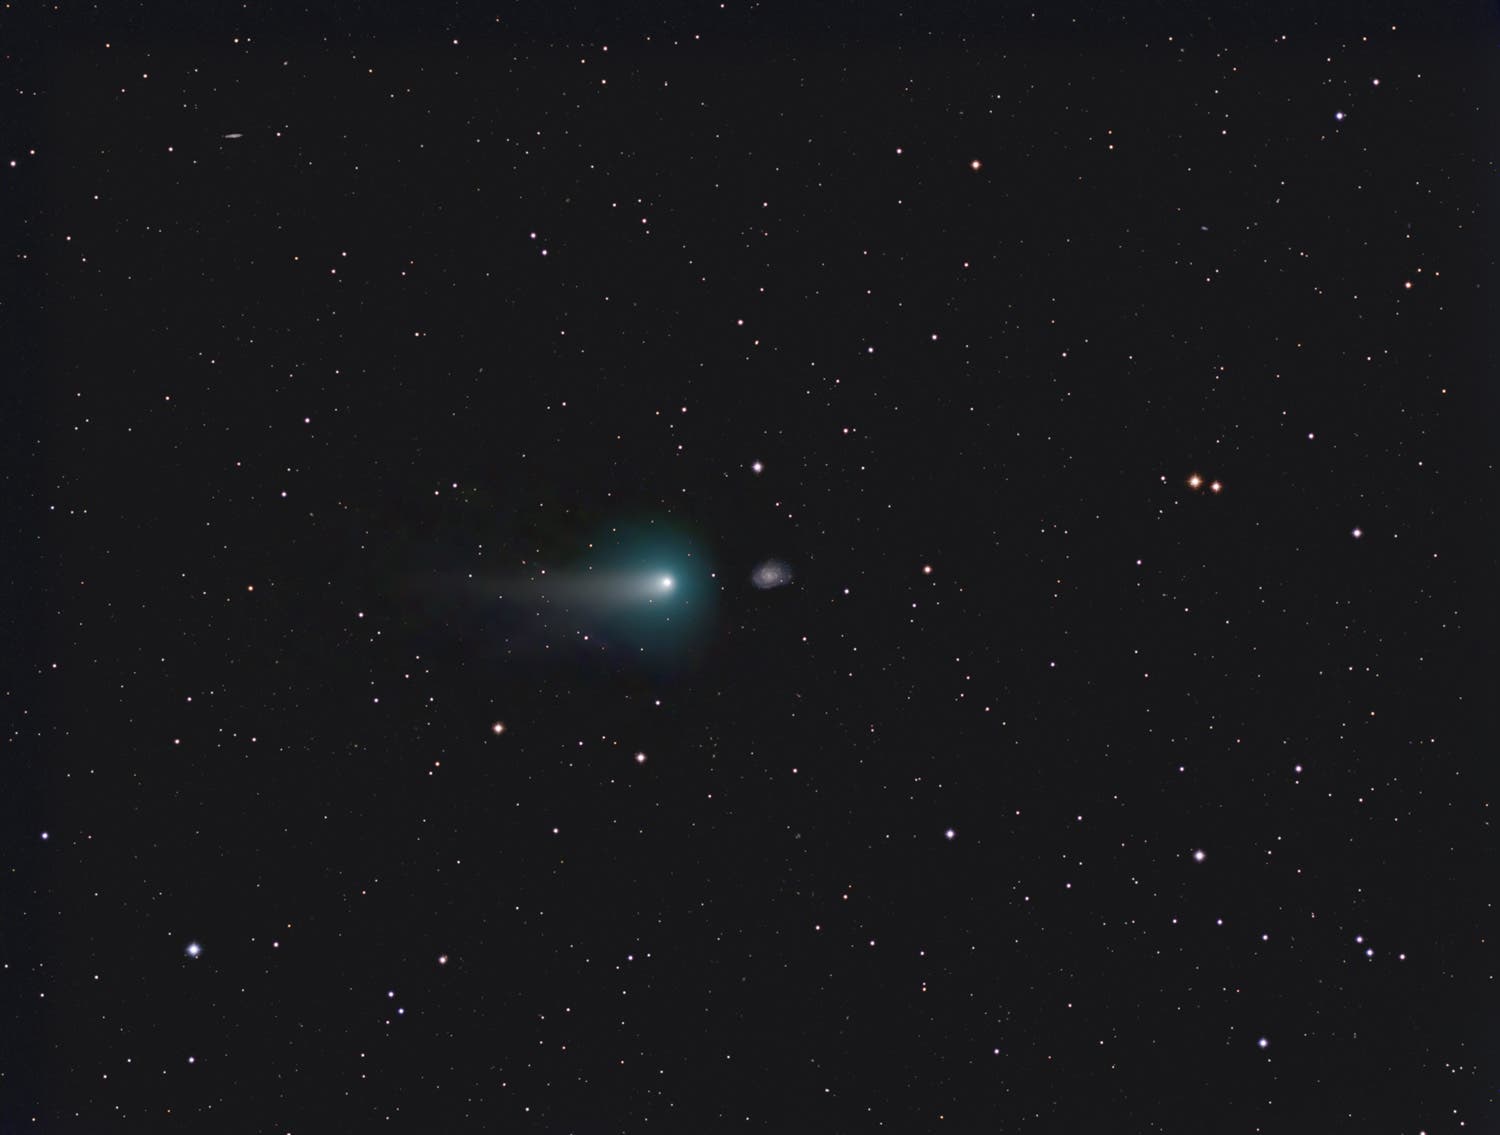 Komet C/2012K1 (Panstarrs) bei Galaxie NGC3614 in Ursa Major